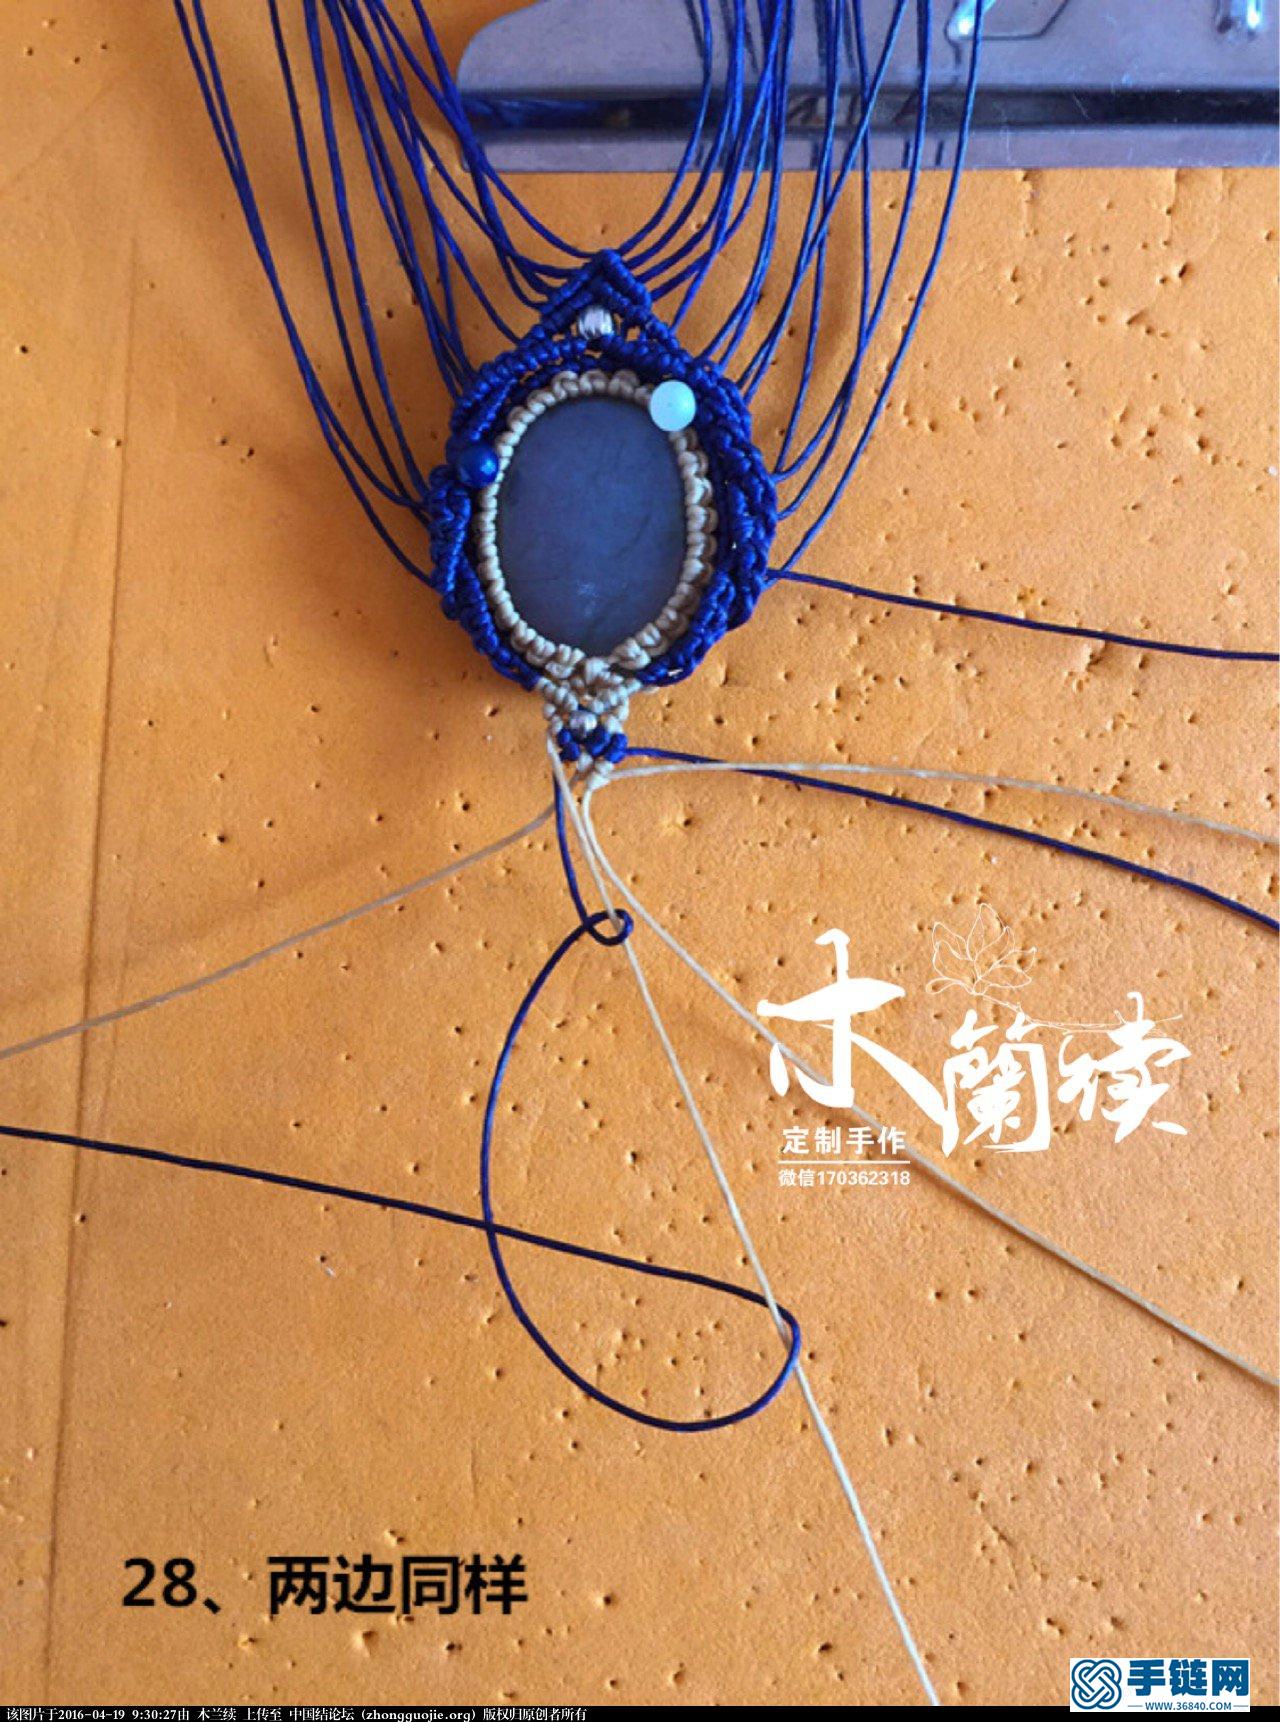 【木兰续】“幽蓝之境”项链吊坠欣赏及教程